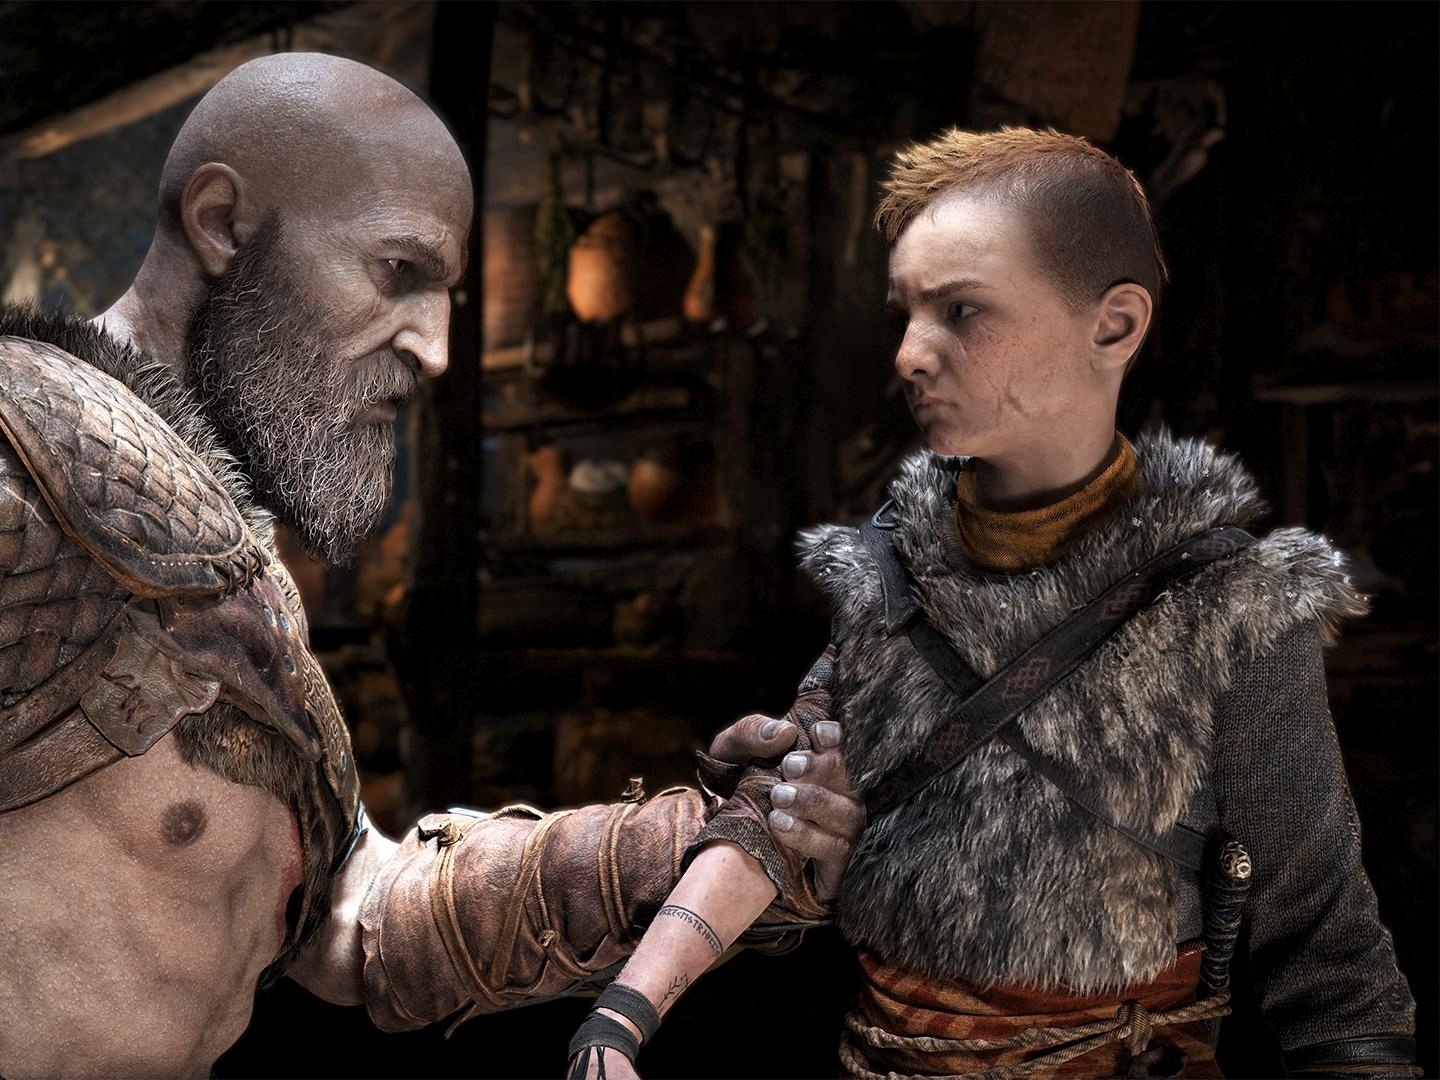 Relato: O God of War de 2018 transformou Kratos em um personagem